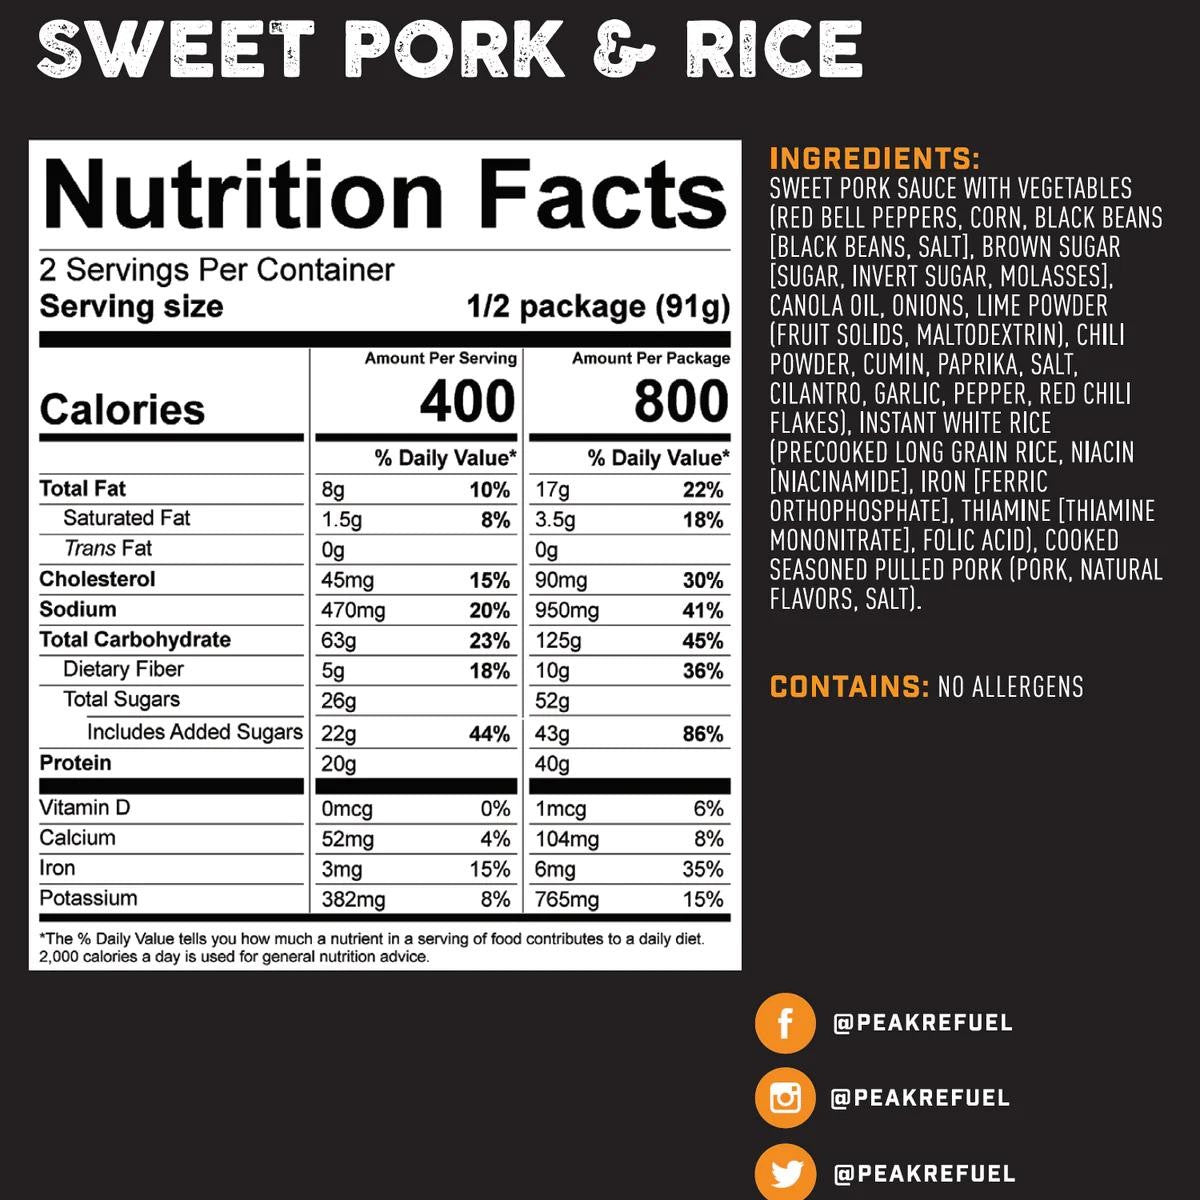 Peak Refuel Sweet Pork & Rice Meal